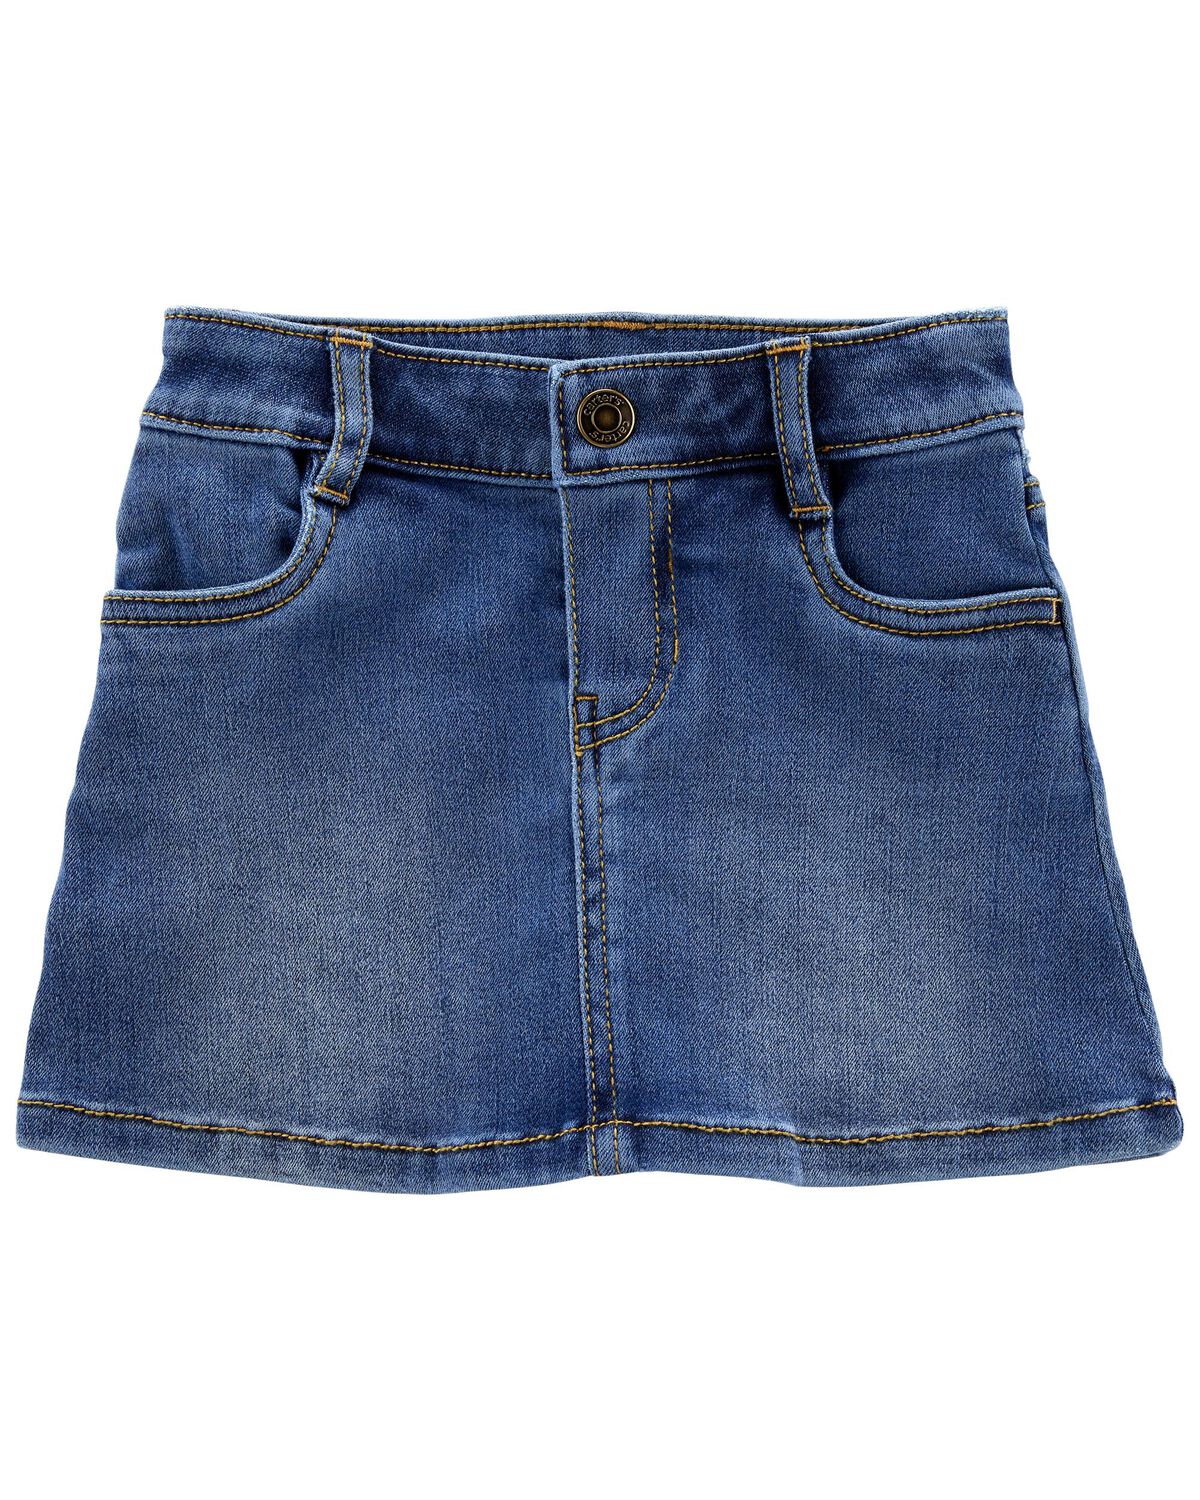 Blue Toddler Denim Skirt | carters.com